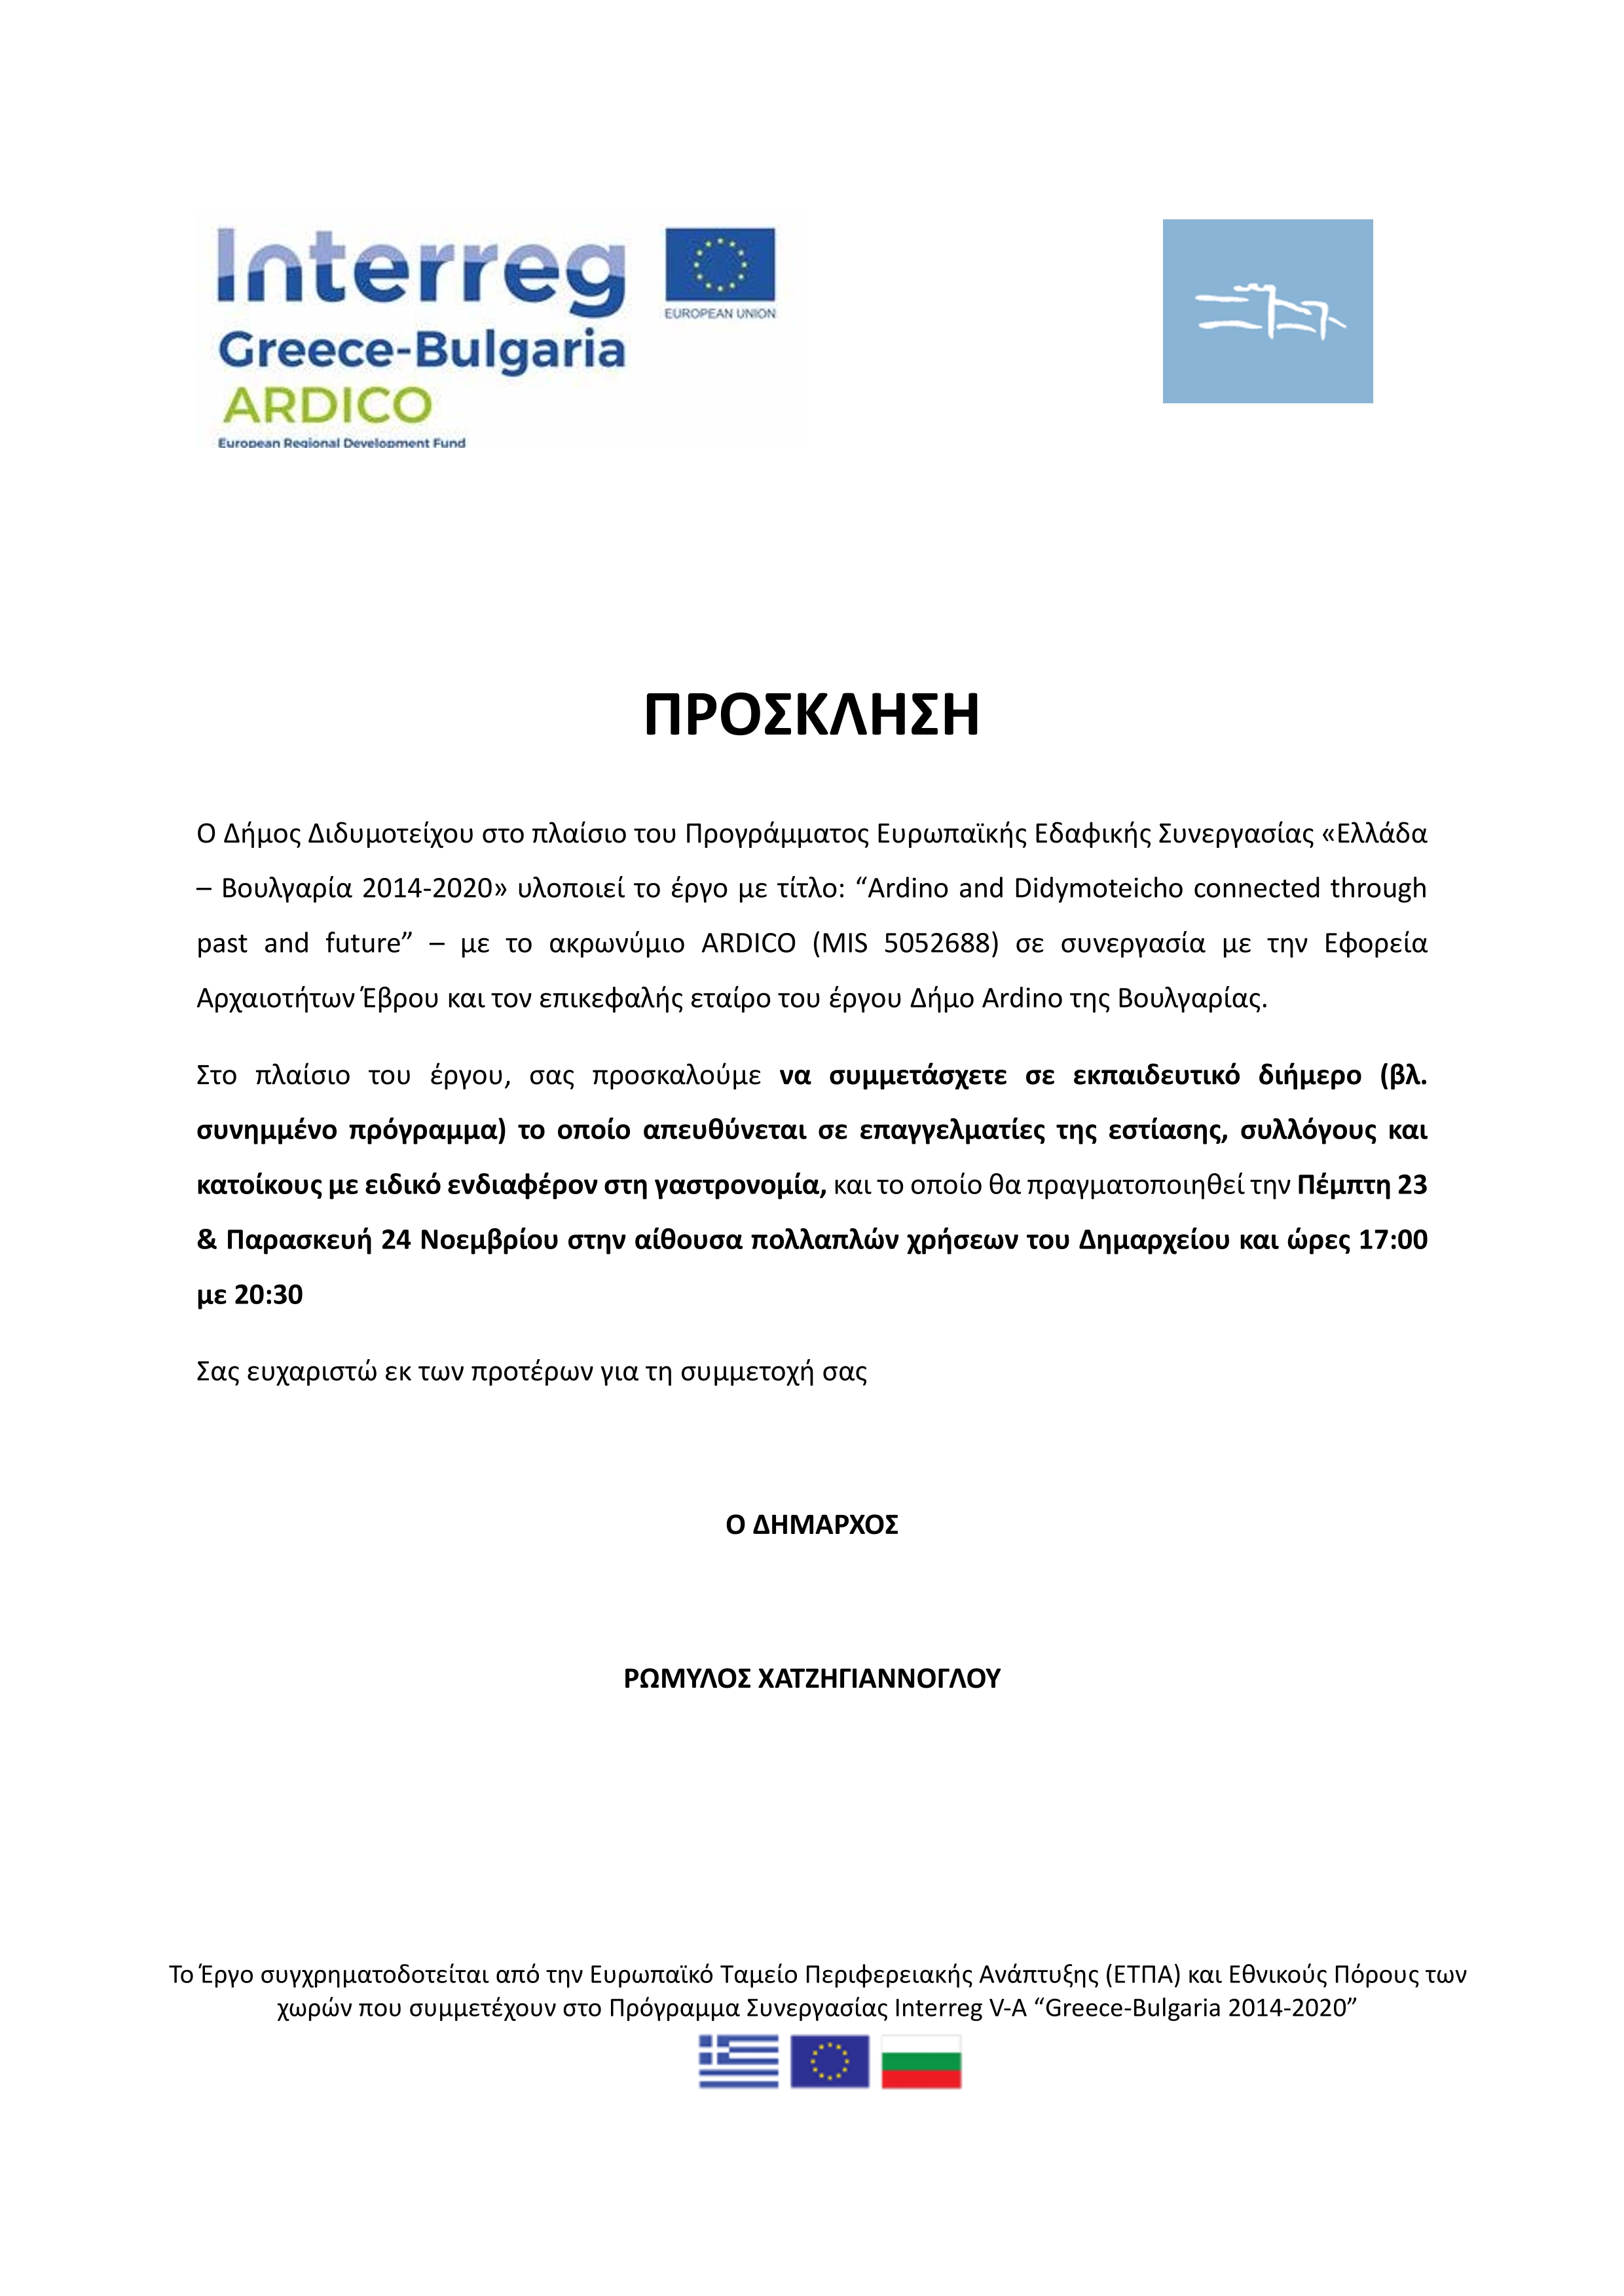 «Ελλάδα – Βουλγαρία 2014-2020» - Εκπαιδευτικό διήμερο (βλ. συνημμένο πρόγραμμα) το οποίο απευθύνεται σε επαγγελματίες της εστίασης, συλλόγους και κατοίκους με ειδικό ενδιαφέρον στη γαστρονομία